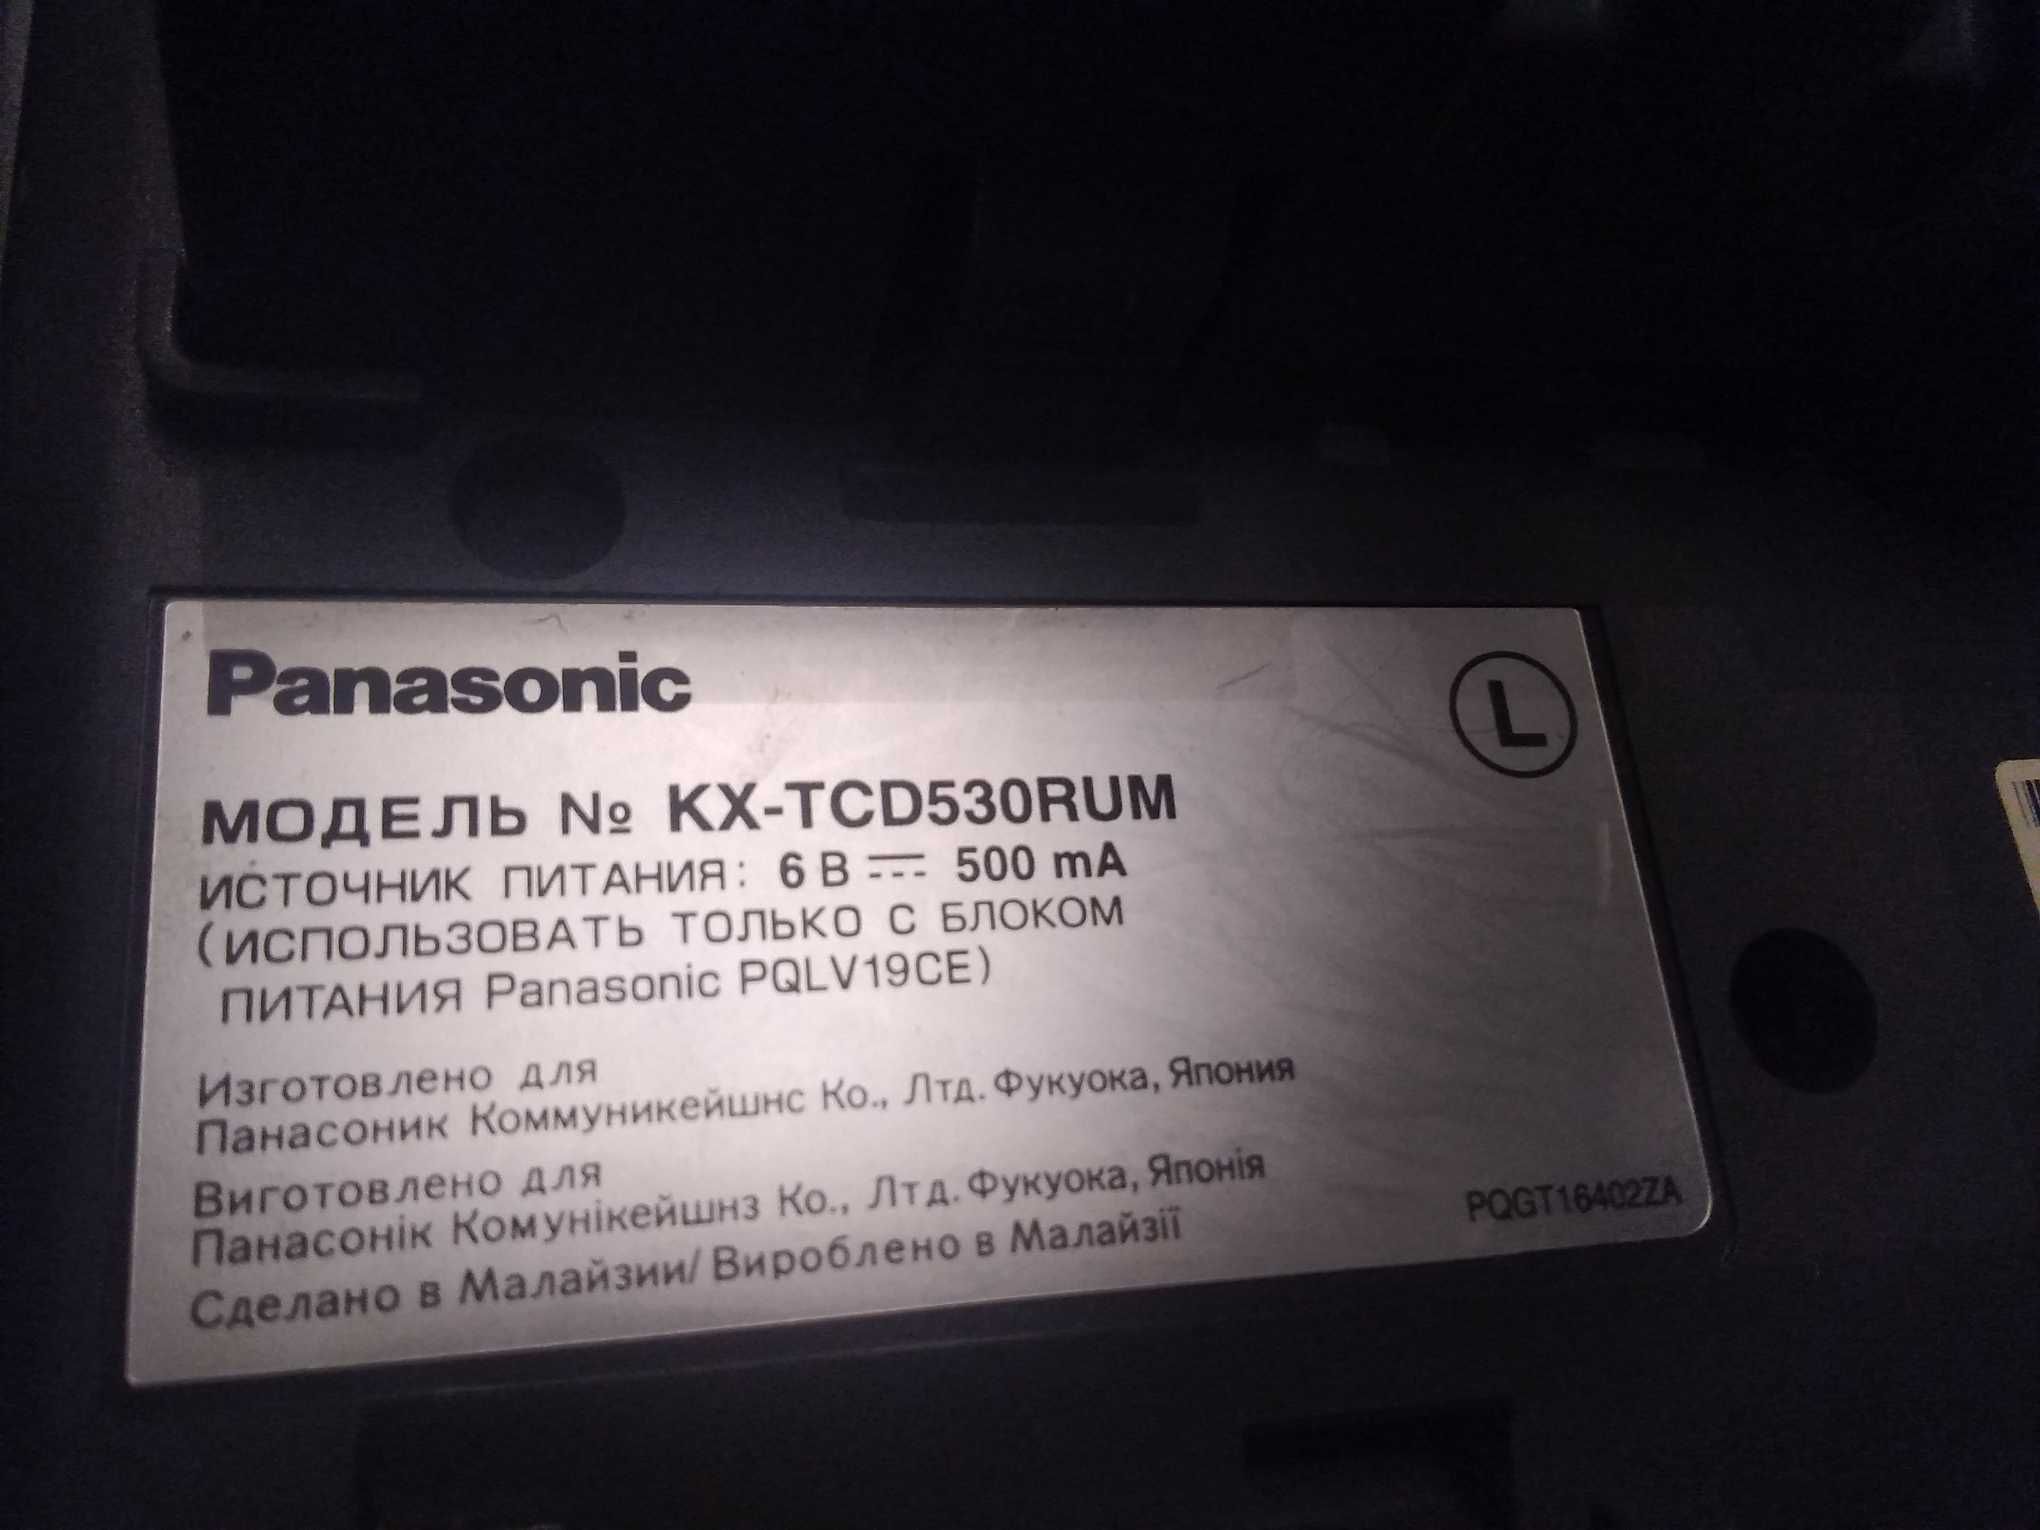 Panasonic KX-TCD530 RUM